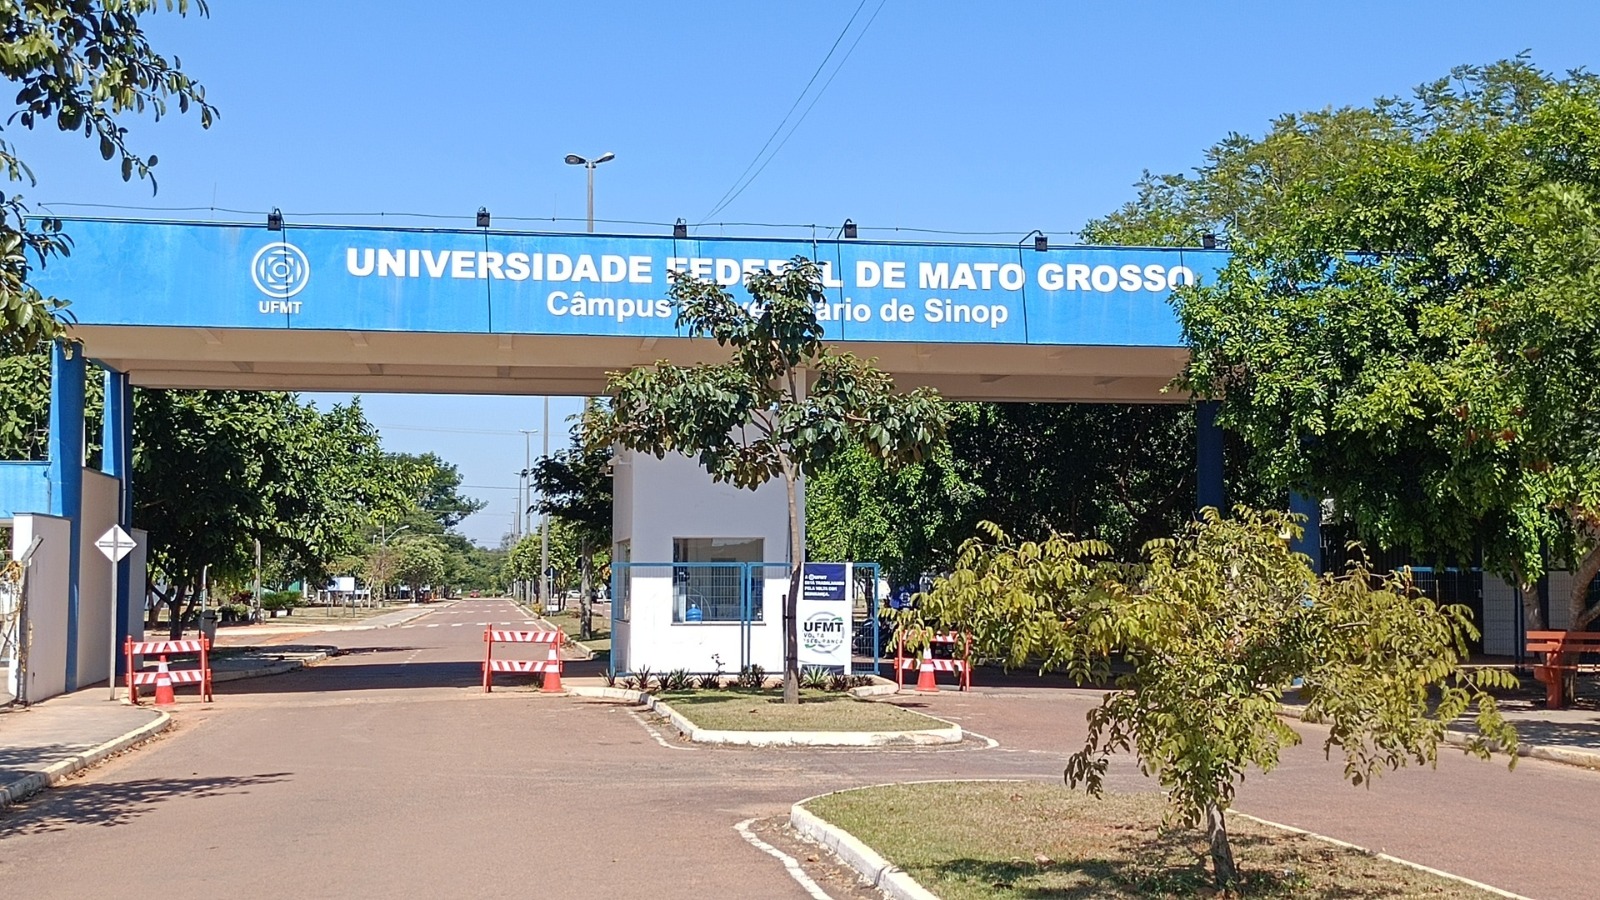 MATO GROSSO: Universidade Federal retifica edital de Concurso para cargos administrativos